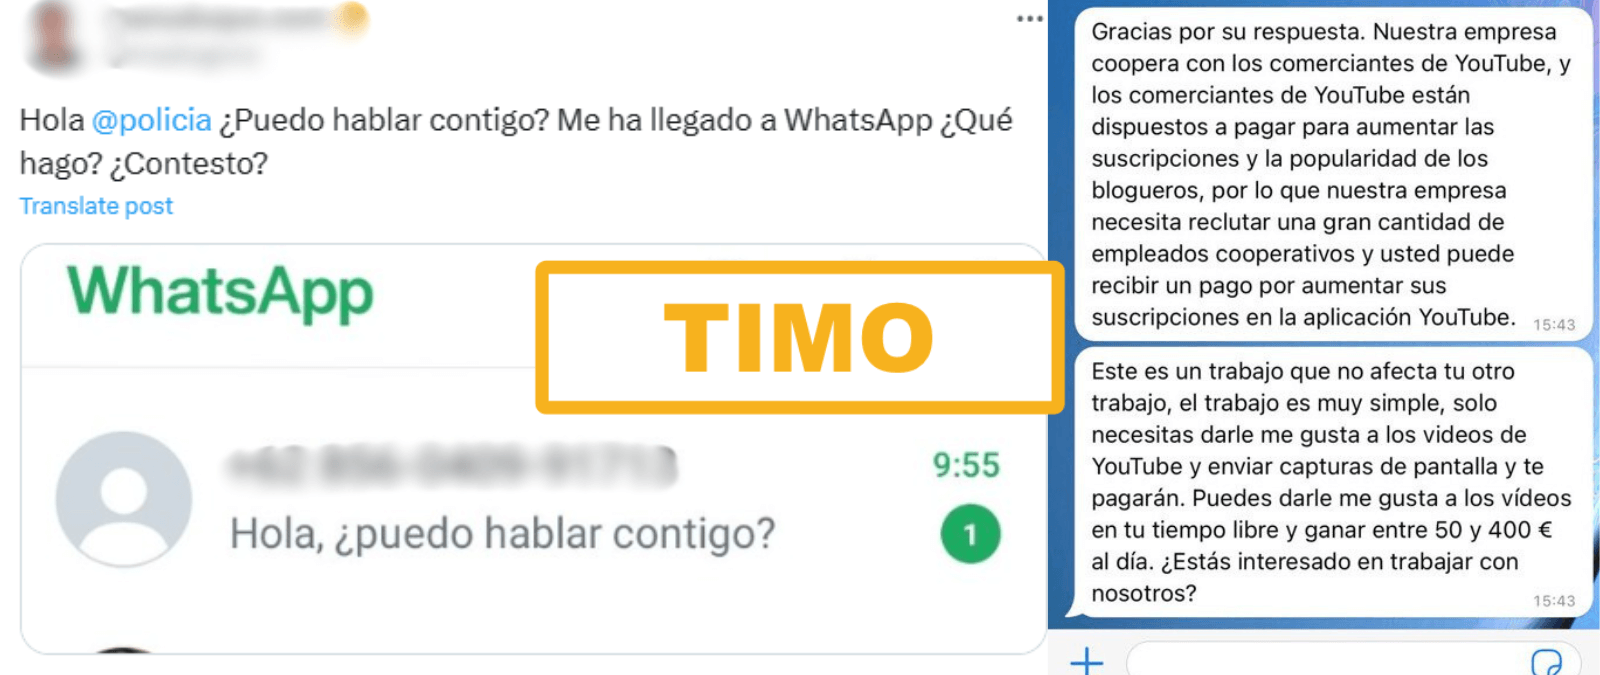 “Hola, ¿puedo hablar contigo?”: cuidado con este mensaje de WhatsApp con el que pretenden ofrecerte un falso trabajo